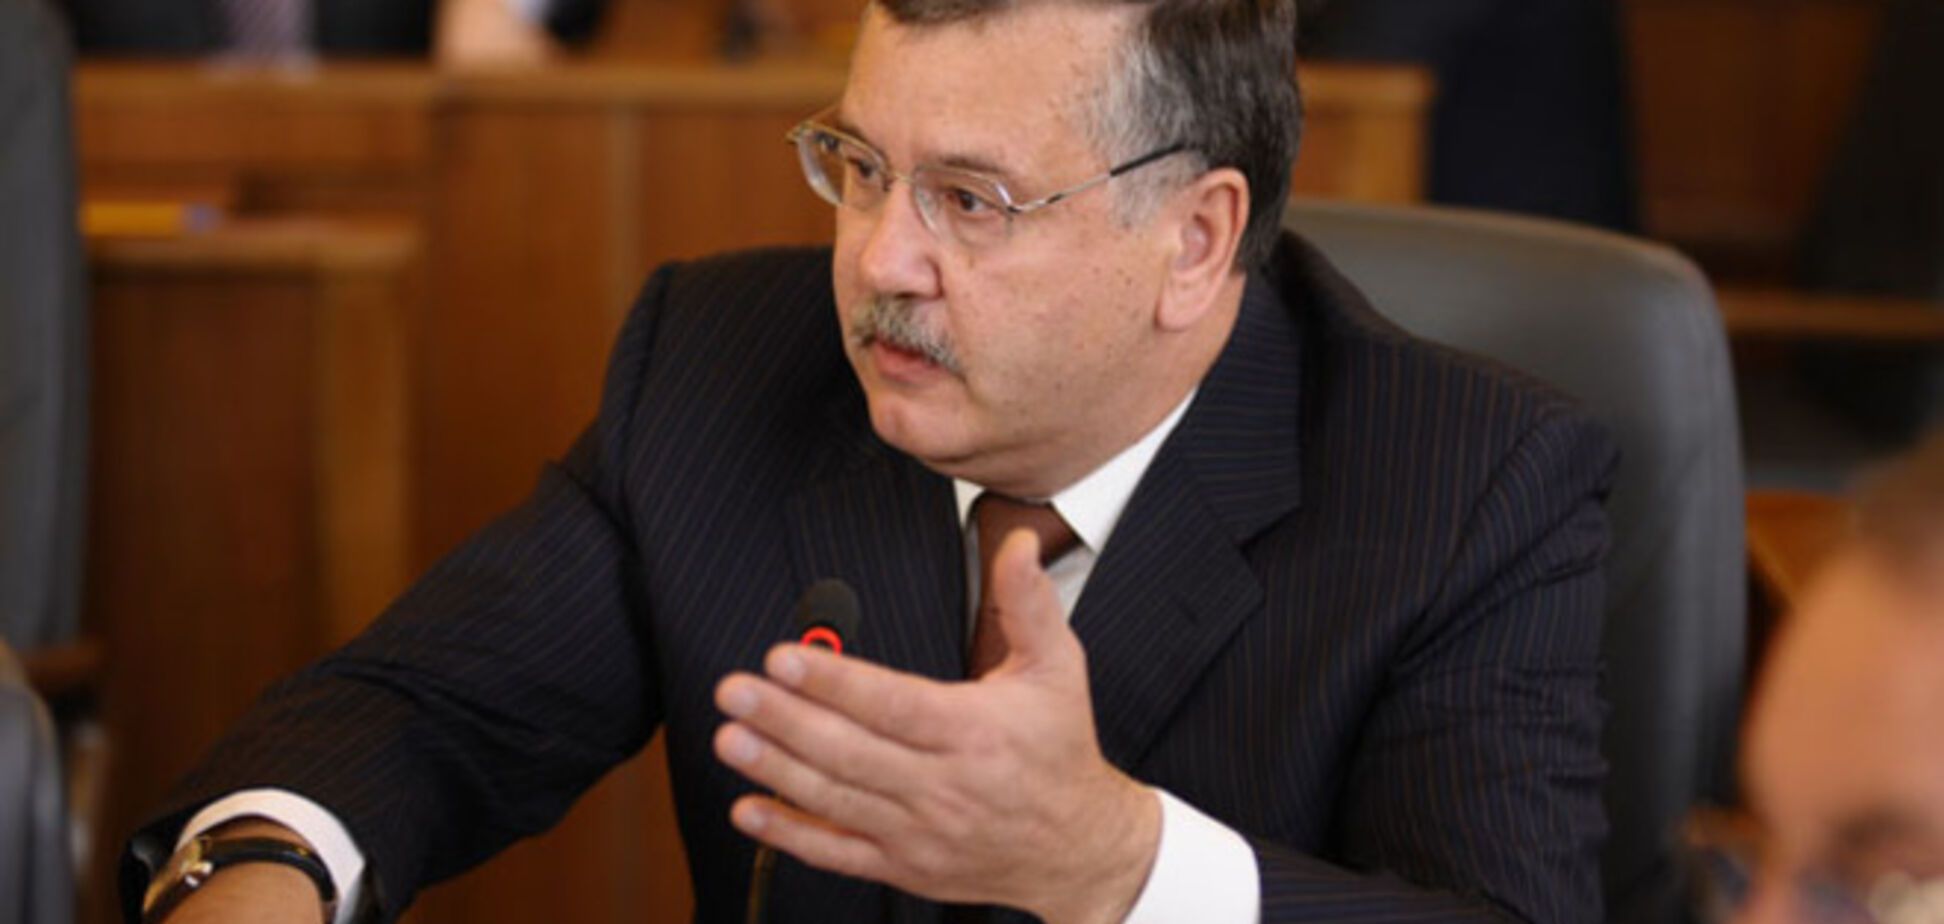 Гриценко спрогнозировал торги и 'терки' между Банковой и Грушевского